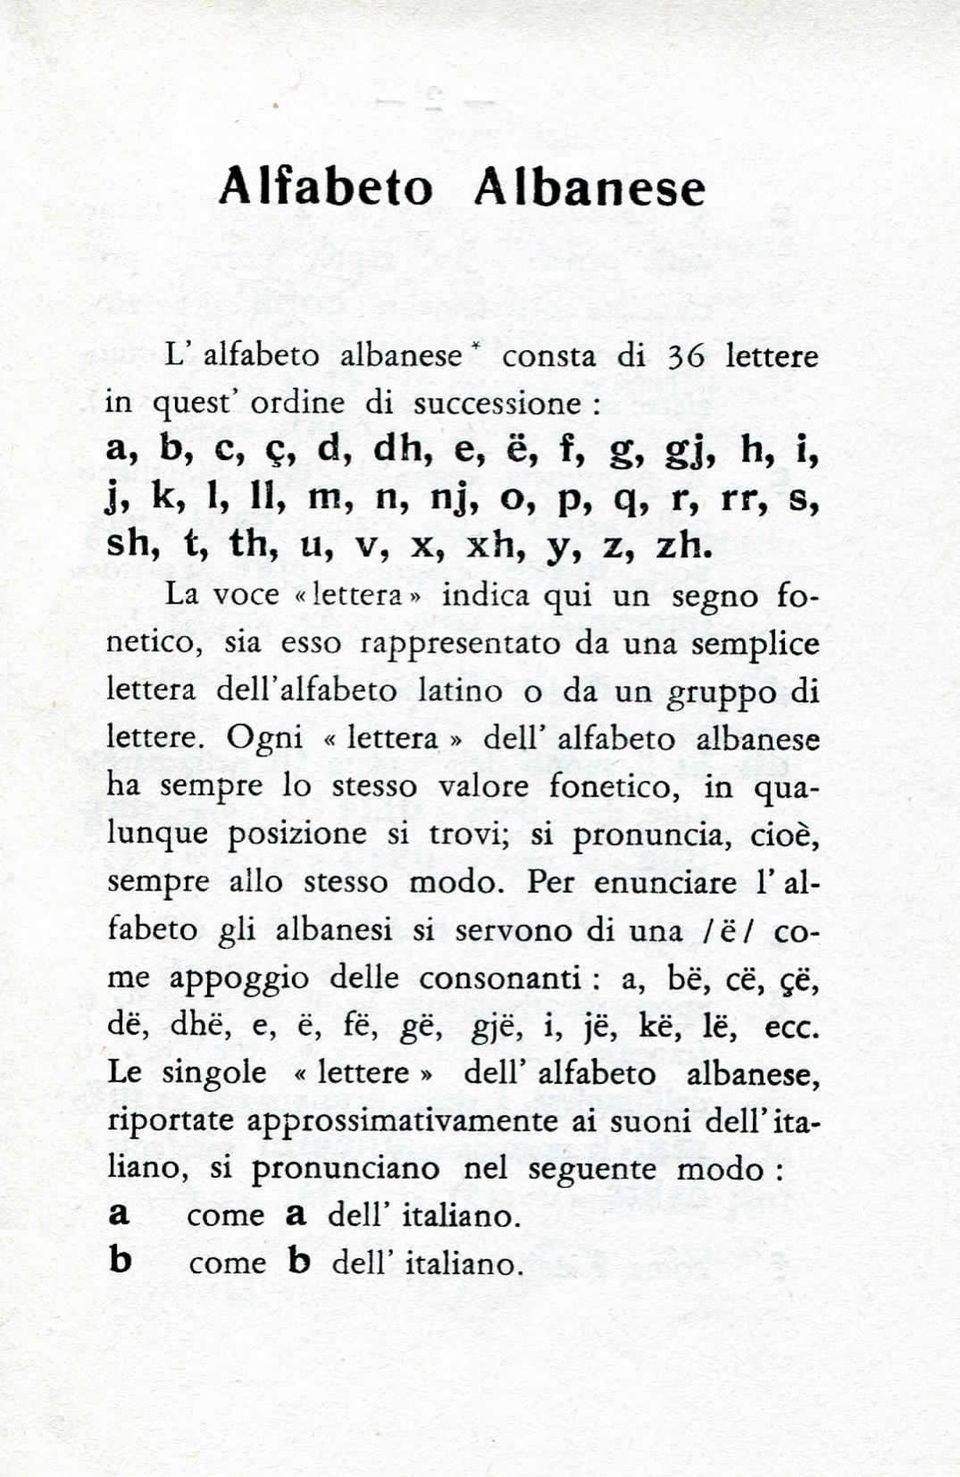 Ogni «lettera» dell' alfabeto albanese ha sempre lo stesso valore fonetico, in qualunque posizione si trovi; si pronuncia, cioè, sempre allo stesso modo.